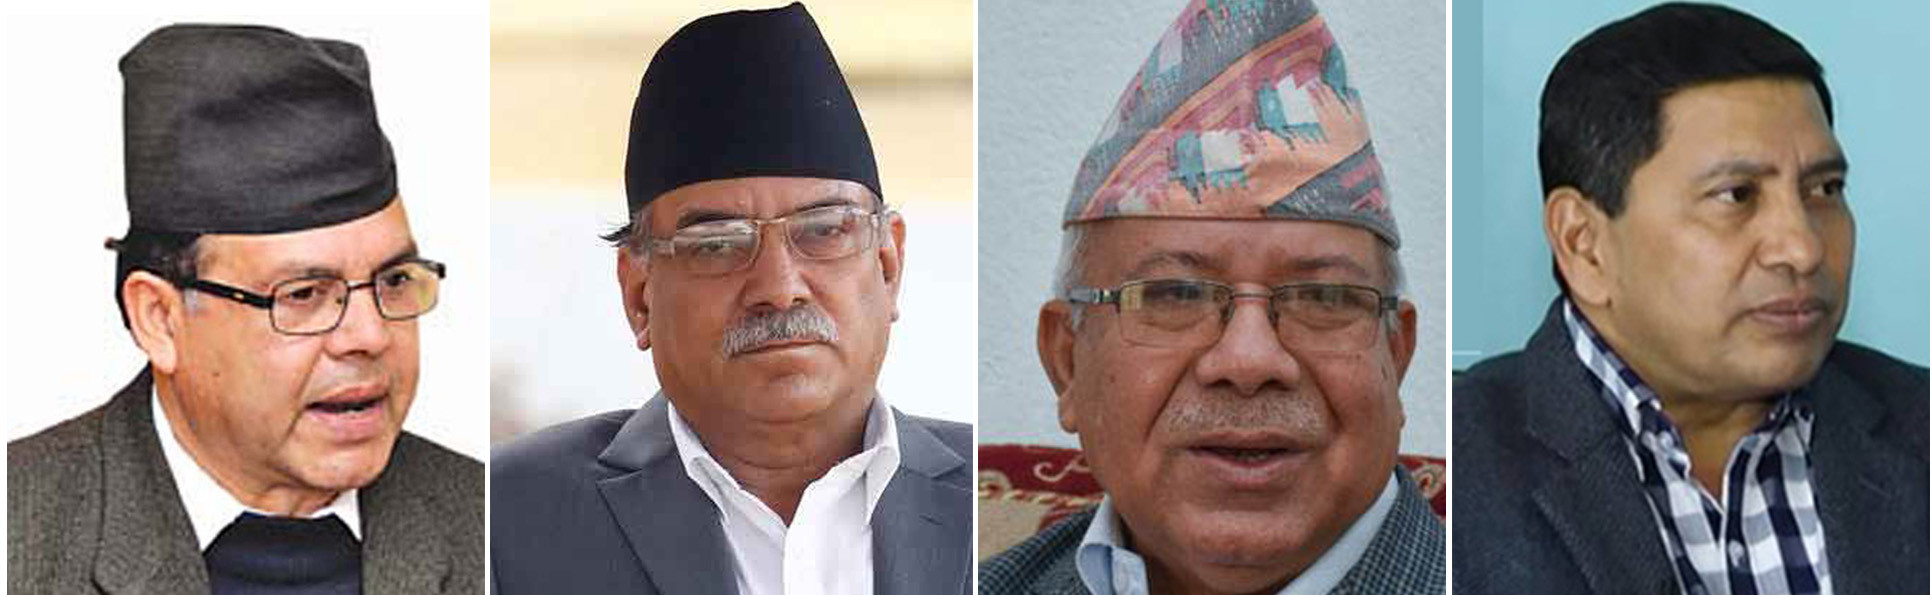 दाहाल–नेपाल समूहको मूड: पार्टी विभाजन गर्न खोजे ओलीलाई नरोक्ने !